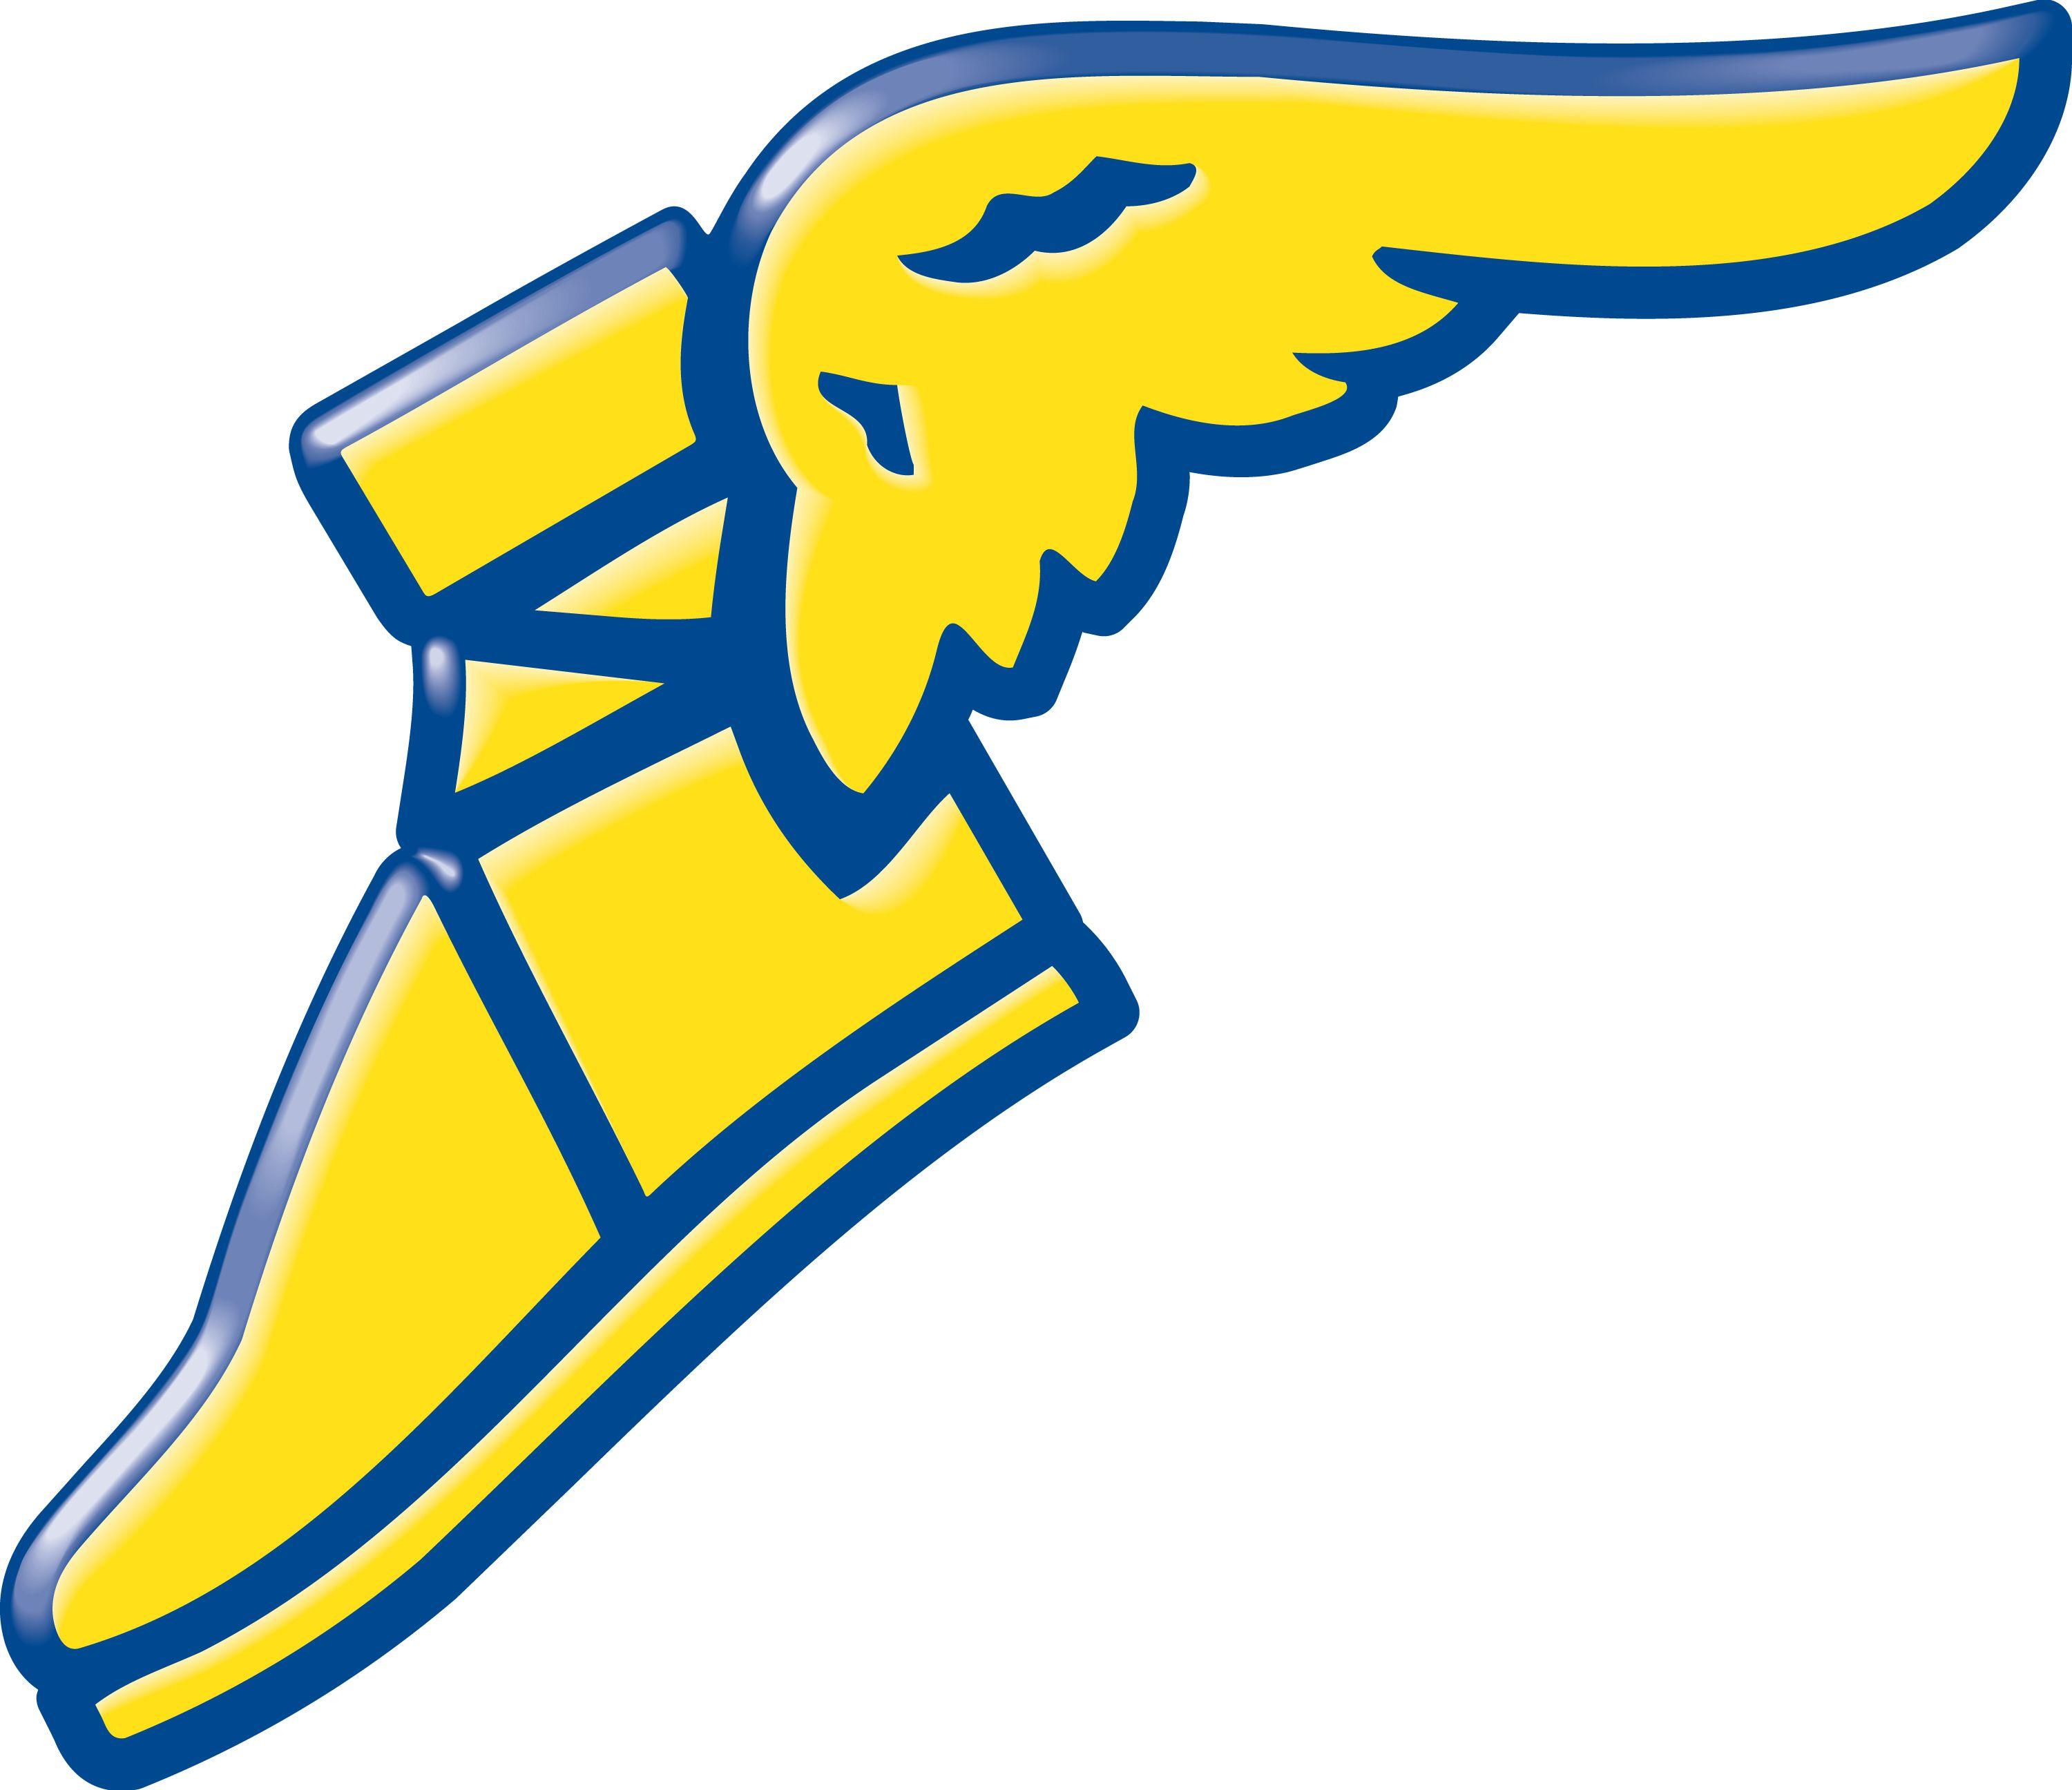 Blue and Yellow Shoe Logo - Flying shoe Logos